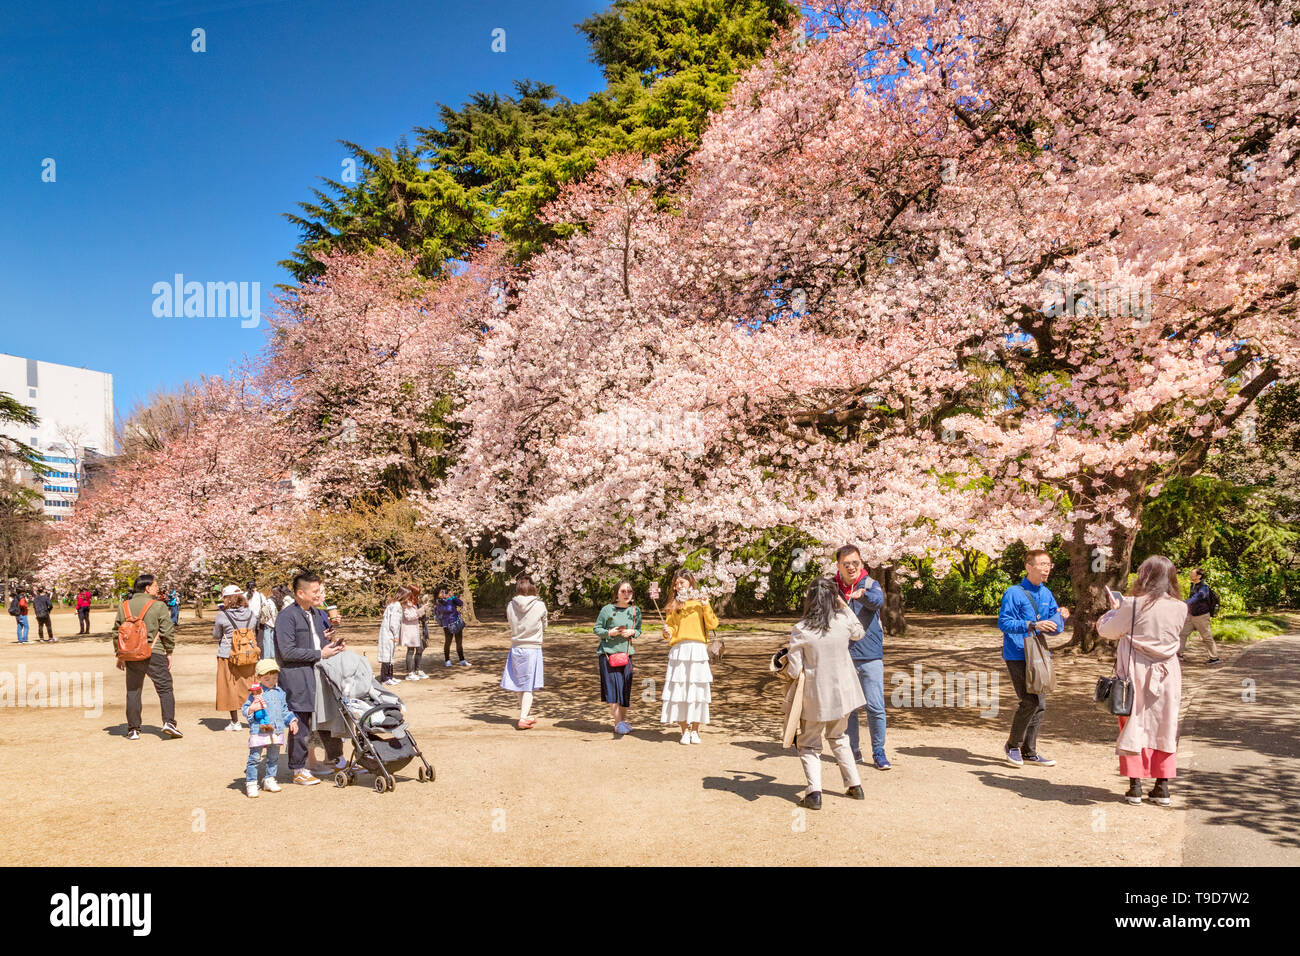 4 Aprile 2019: Tokyo, Giappone - la fioritura dei ciliegi in Shinjuku Gyoen Park in primavera con i visitatori per scattare delle foto e selfies. Foto Stock